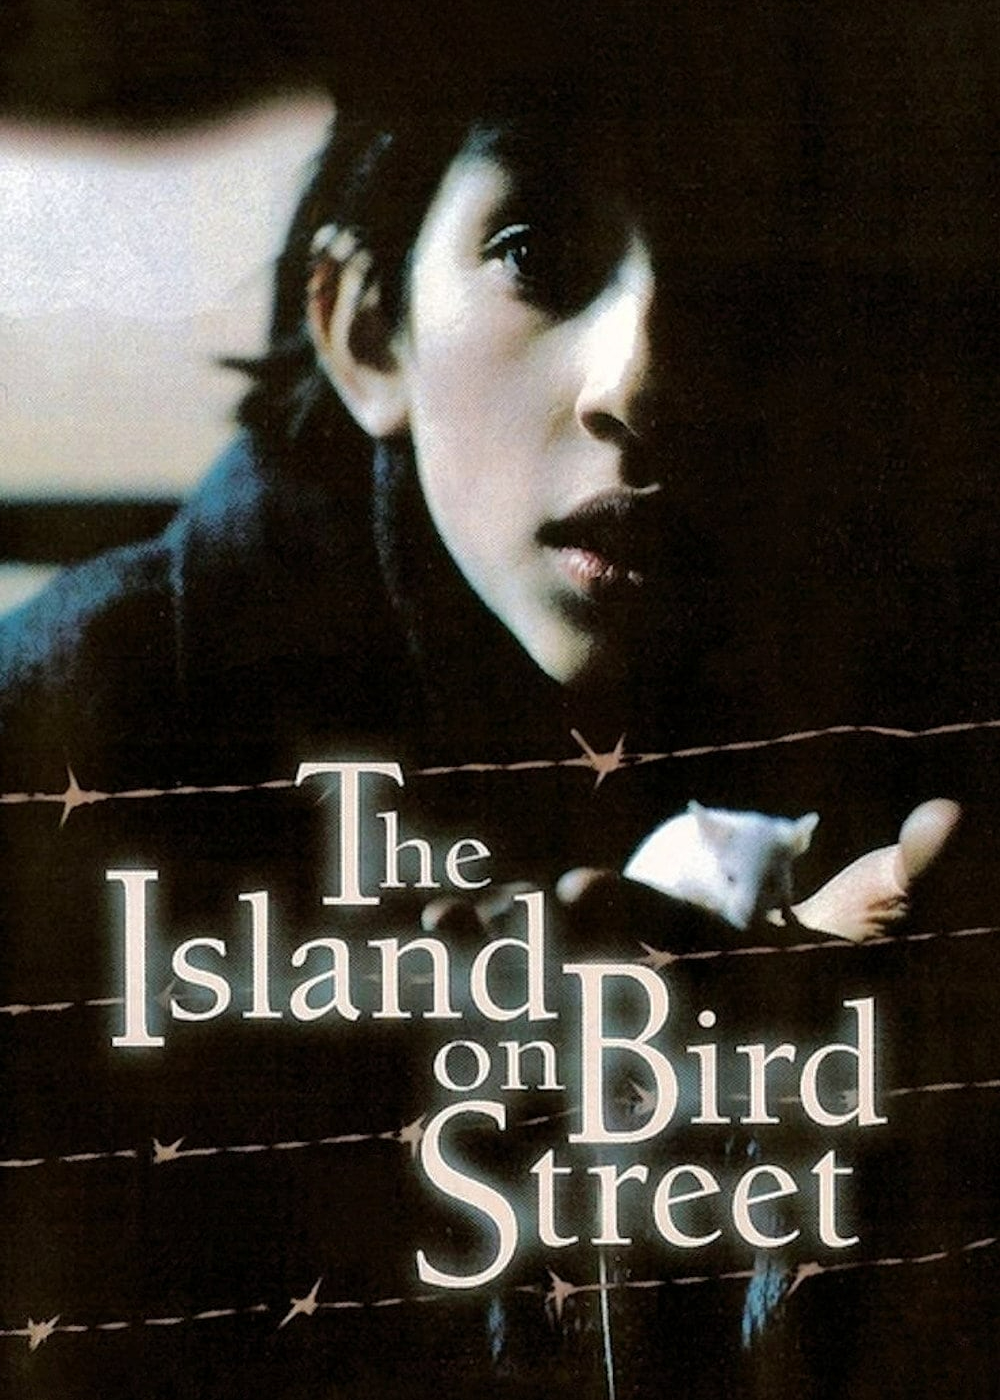 The Island on Bird Street - The Island on Bird Street